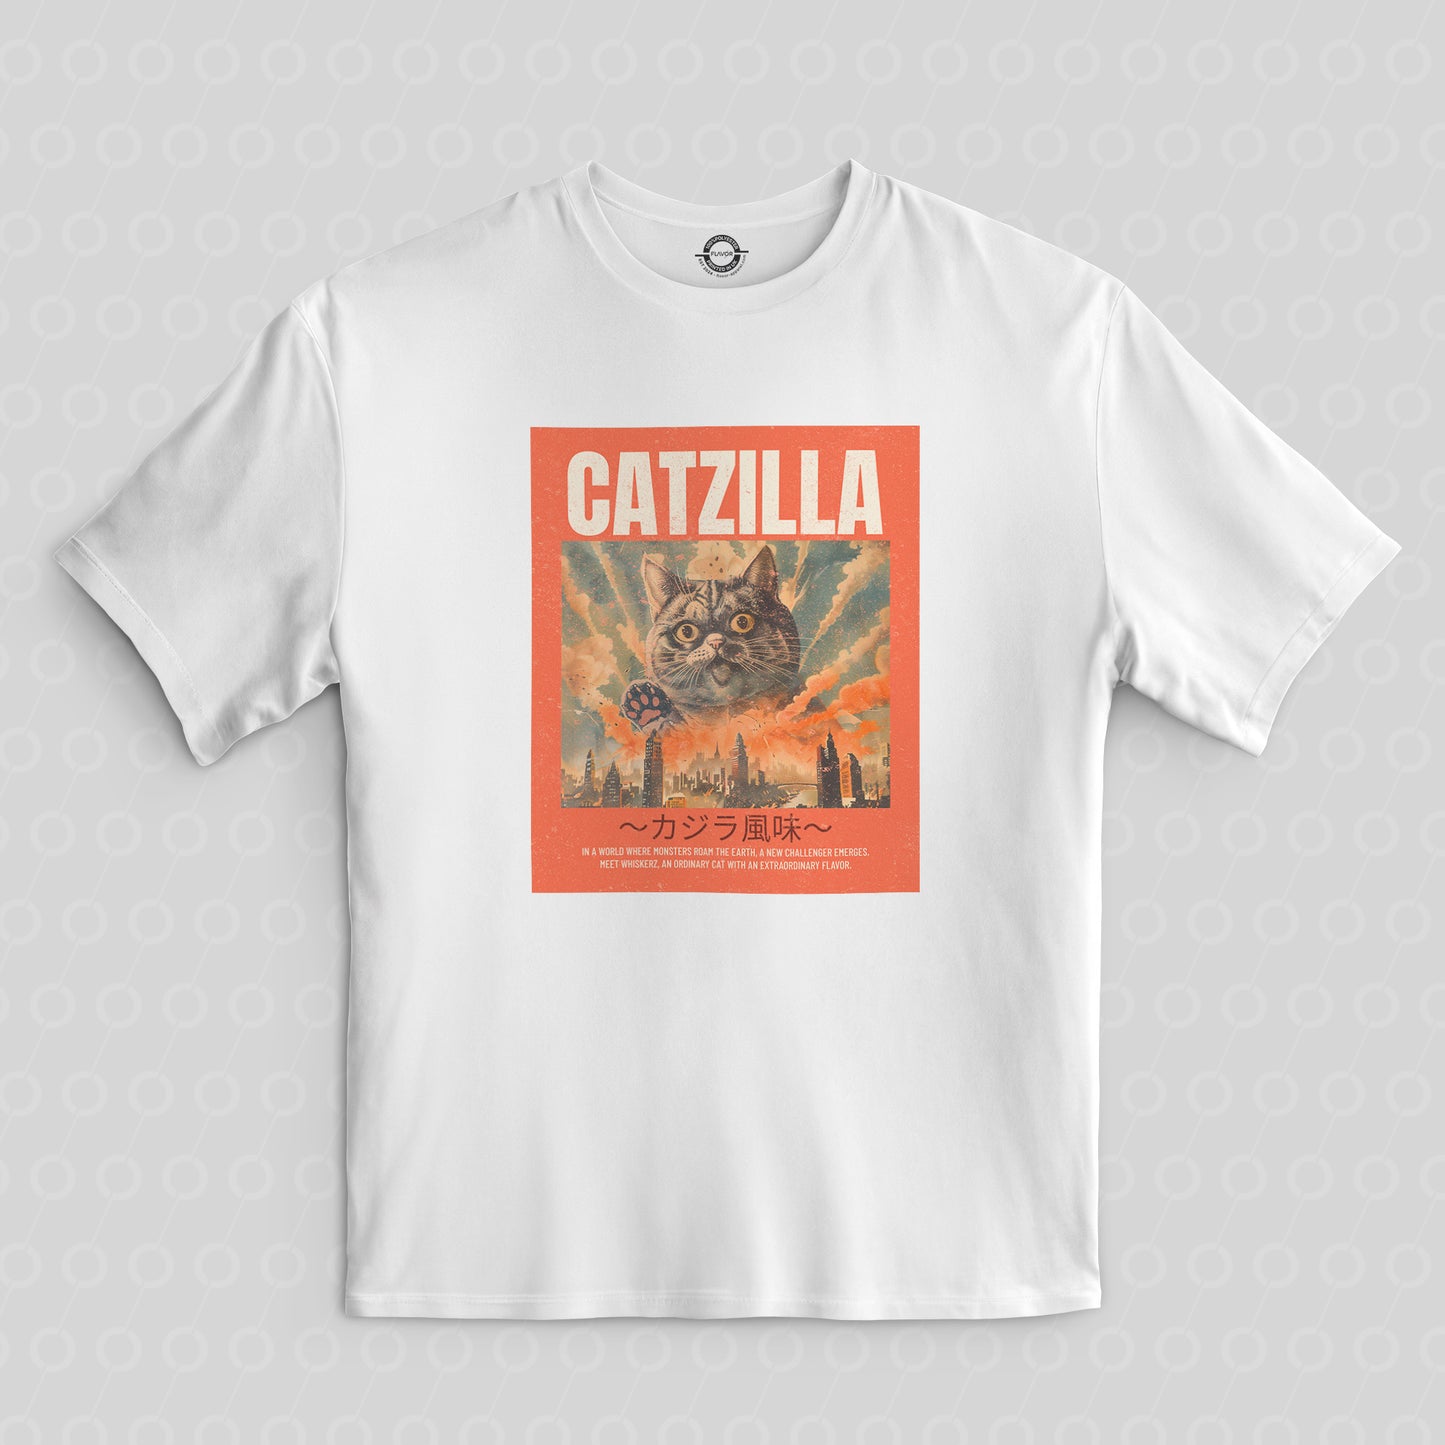 Catzilla Cat Monster T-Shirt White Red T Shirt Tshirt